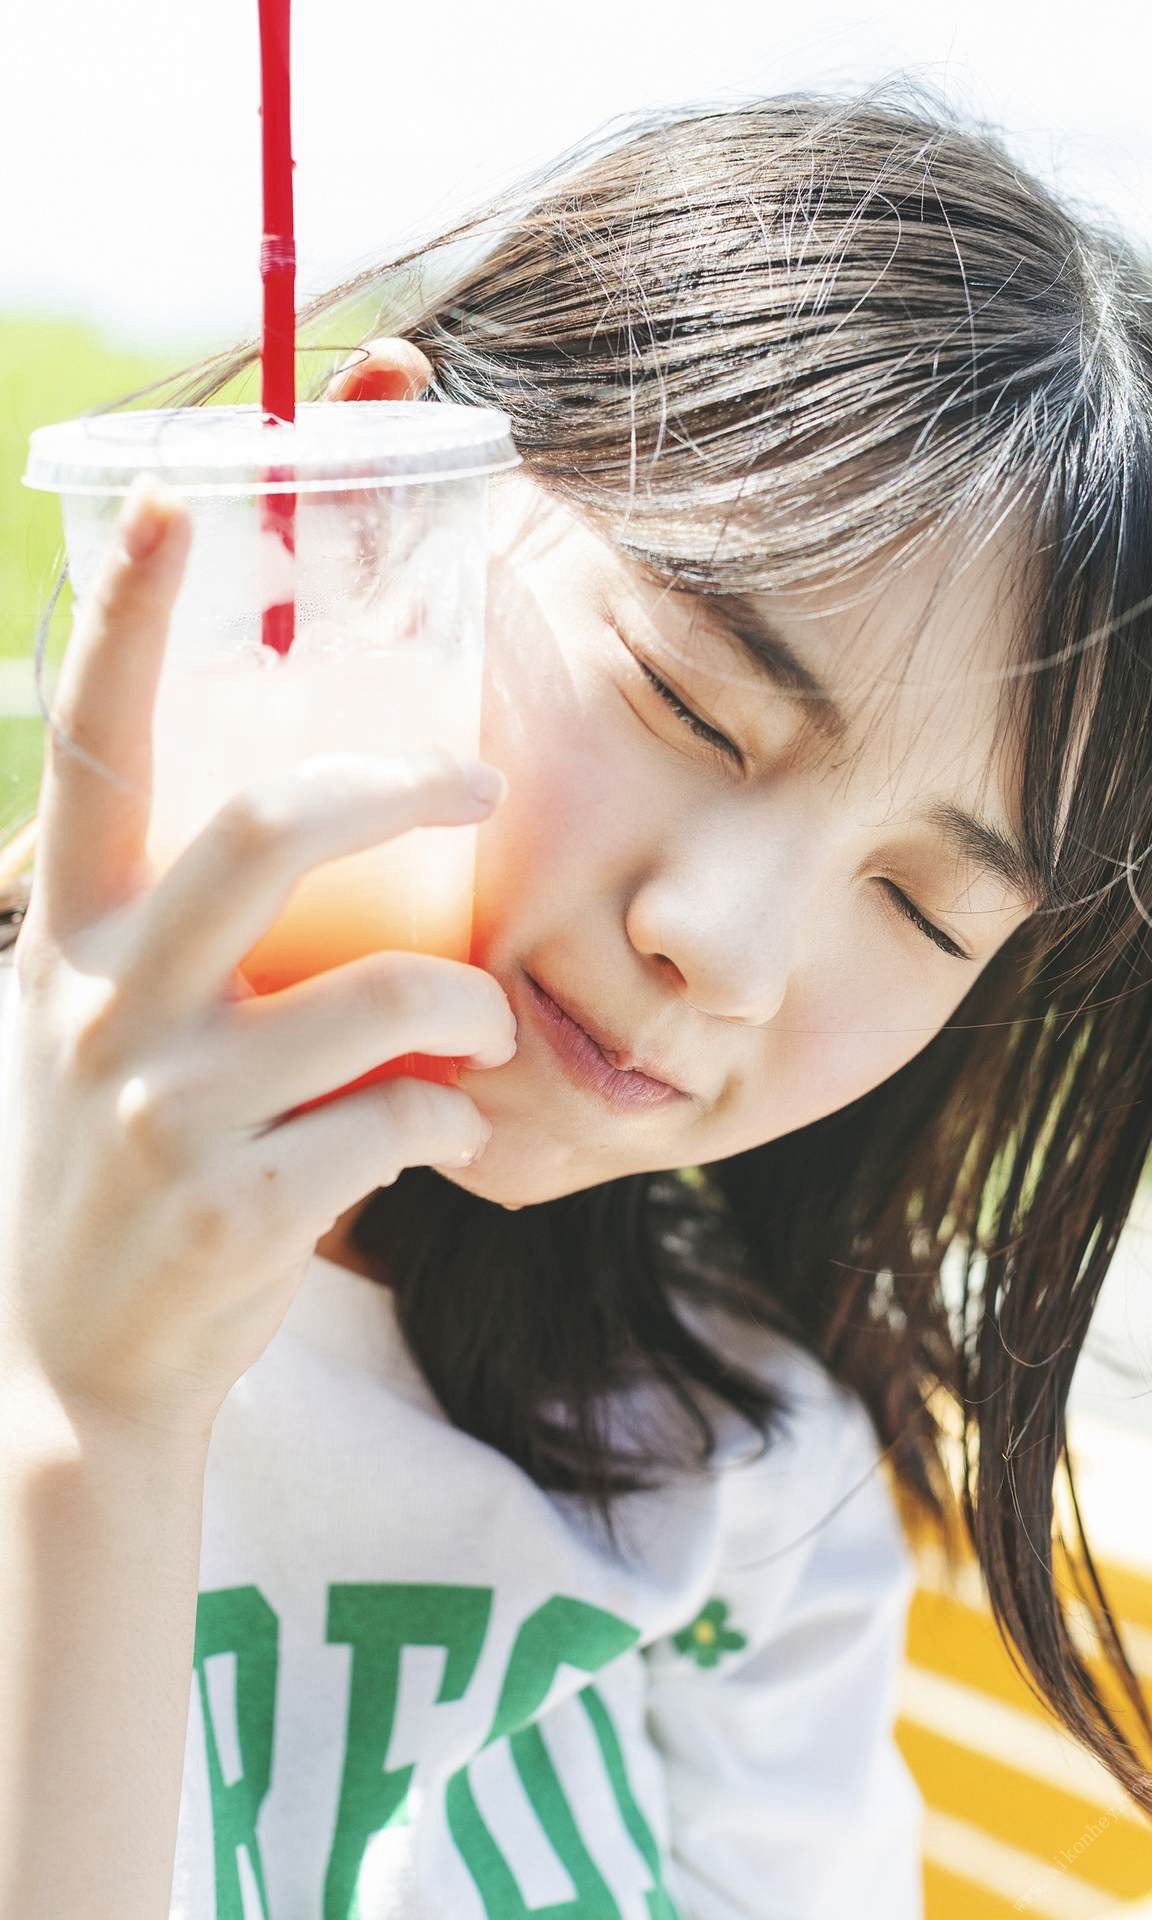 【画像44枚】菊地姫奈のエロすぎFカップおっぱい水着グラビア03